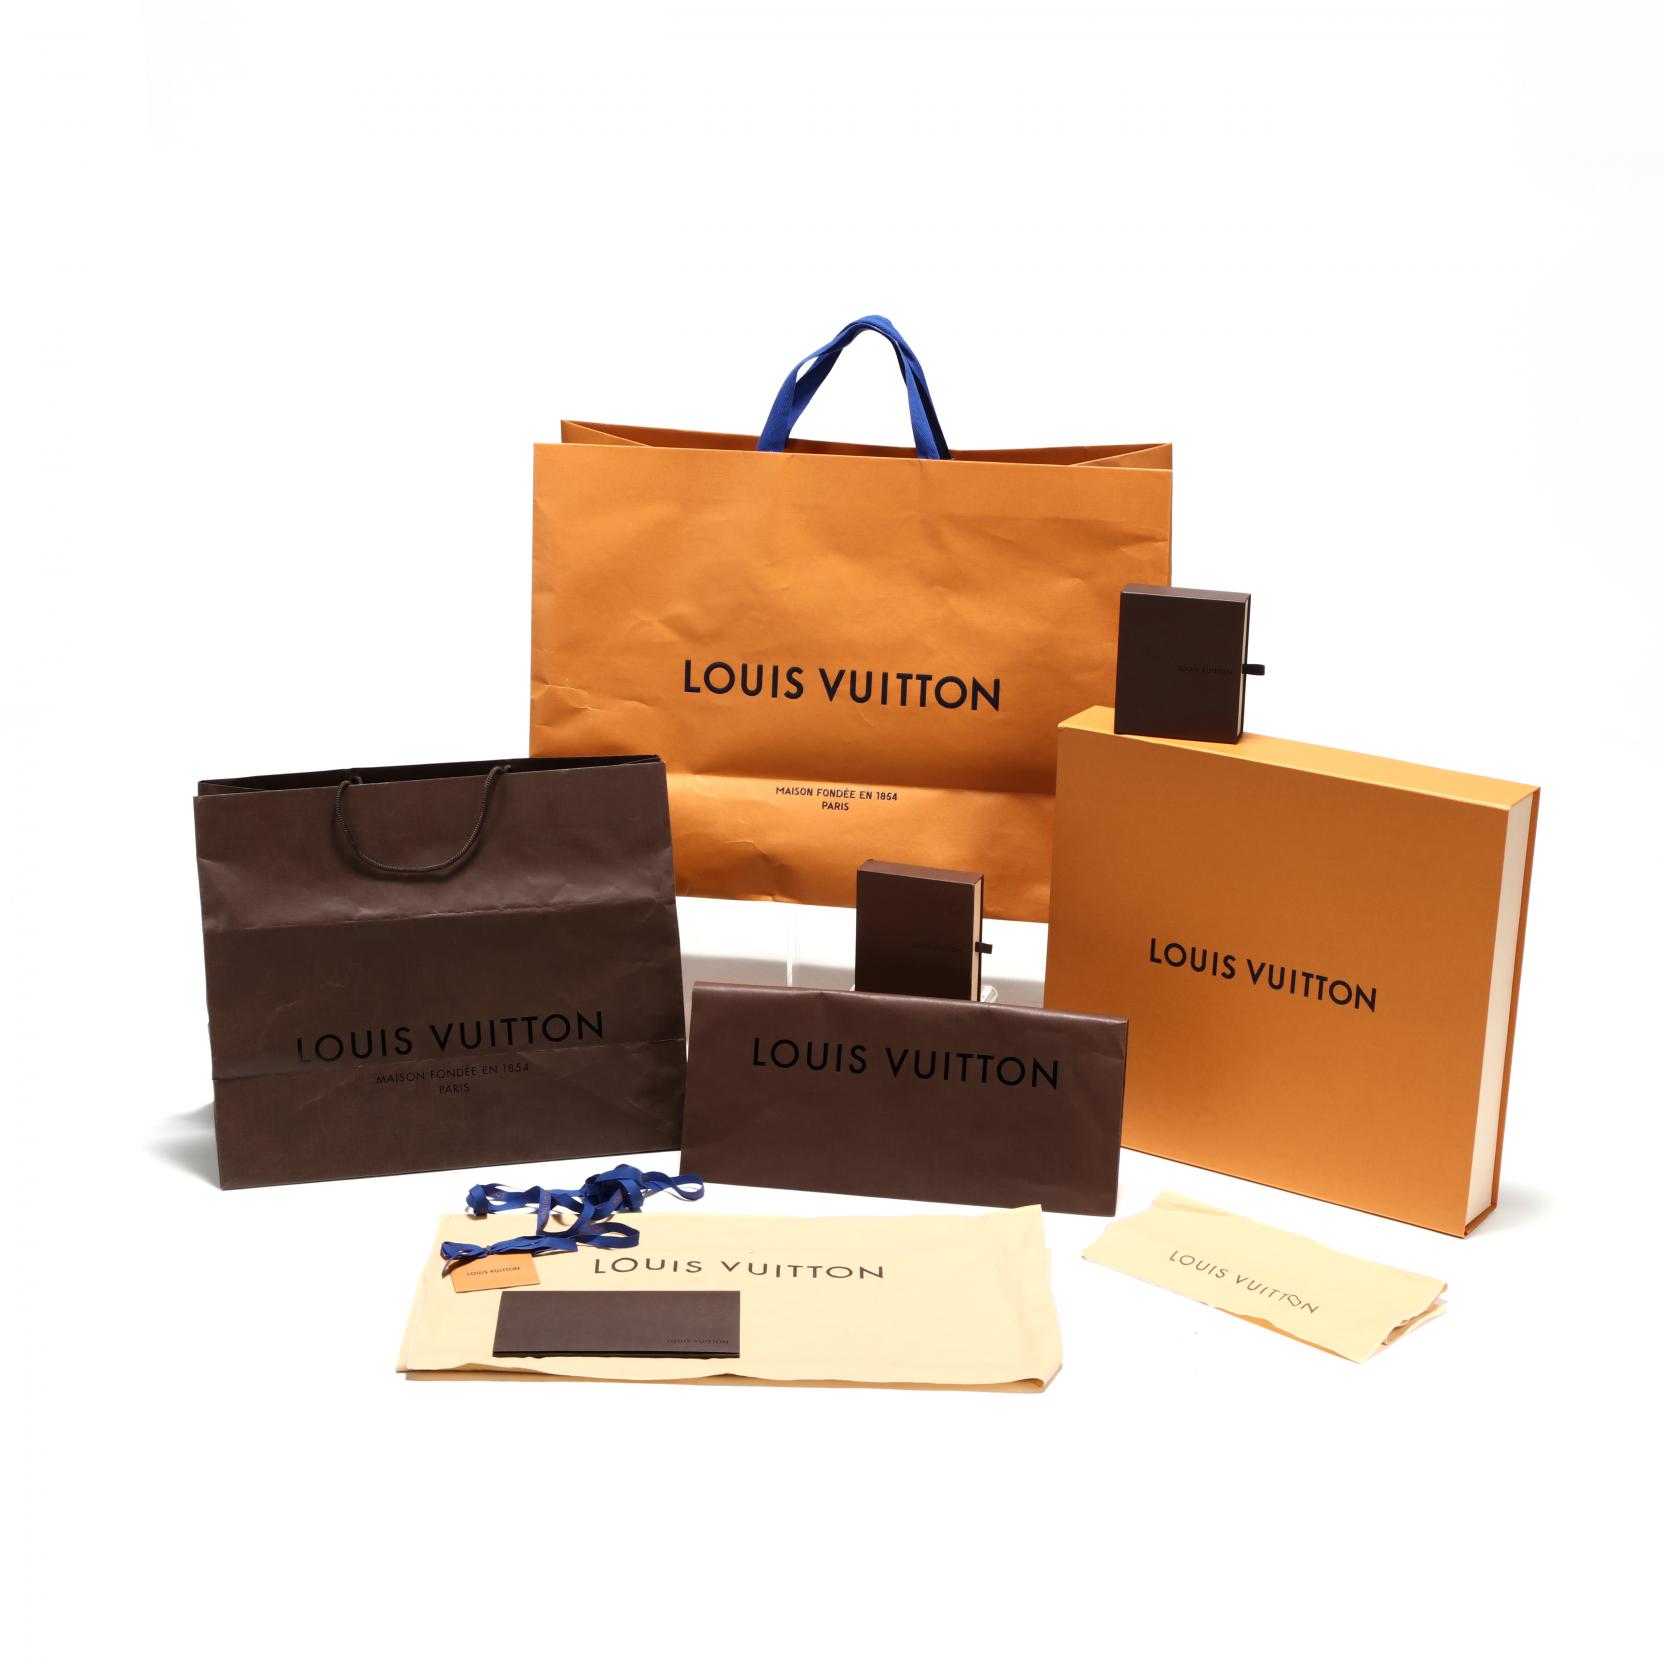 Sold at Auction: Louis Vuitton Envelope Dust Cover Bag